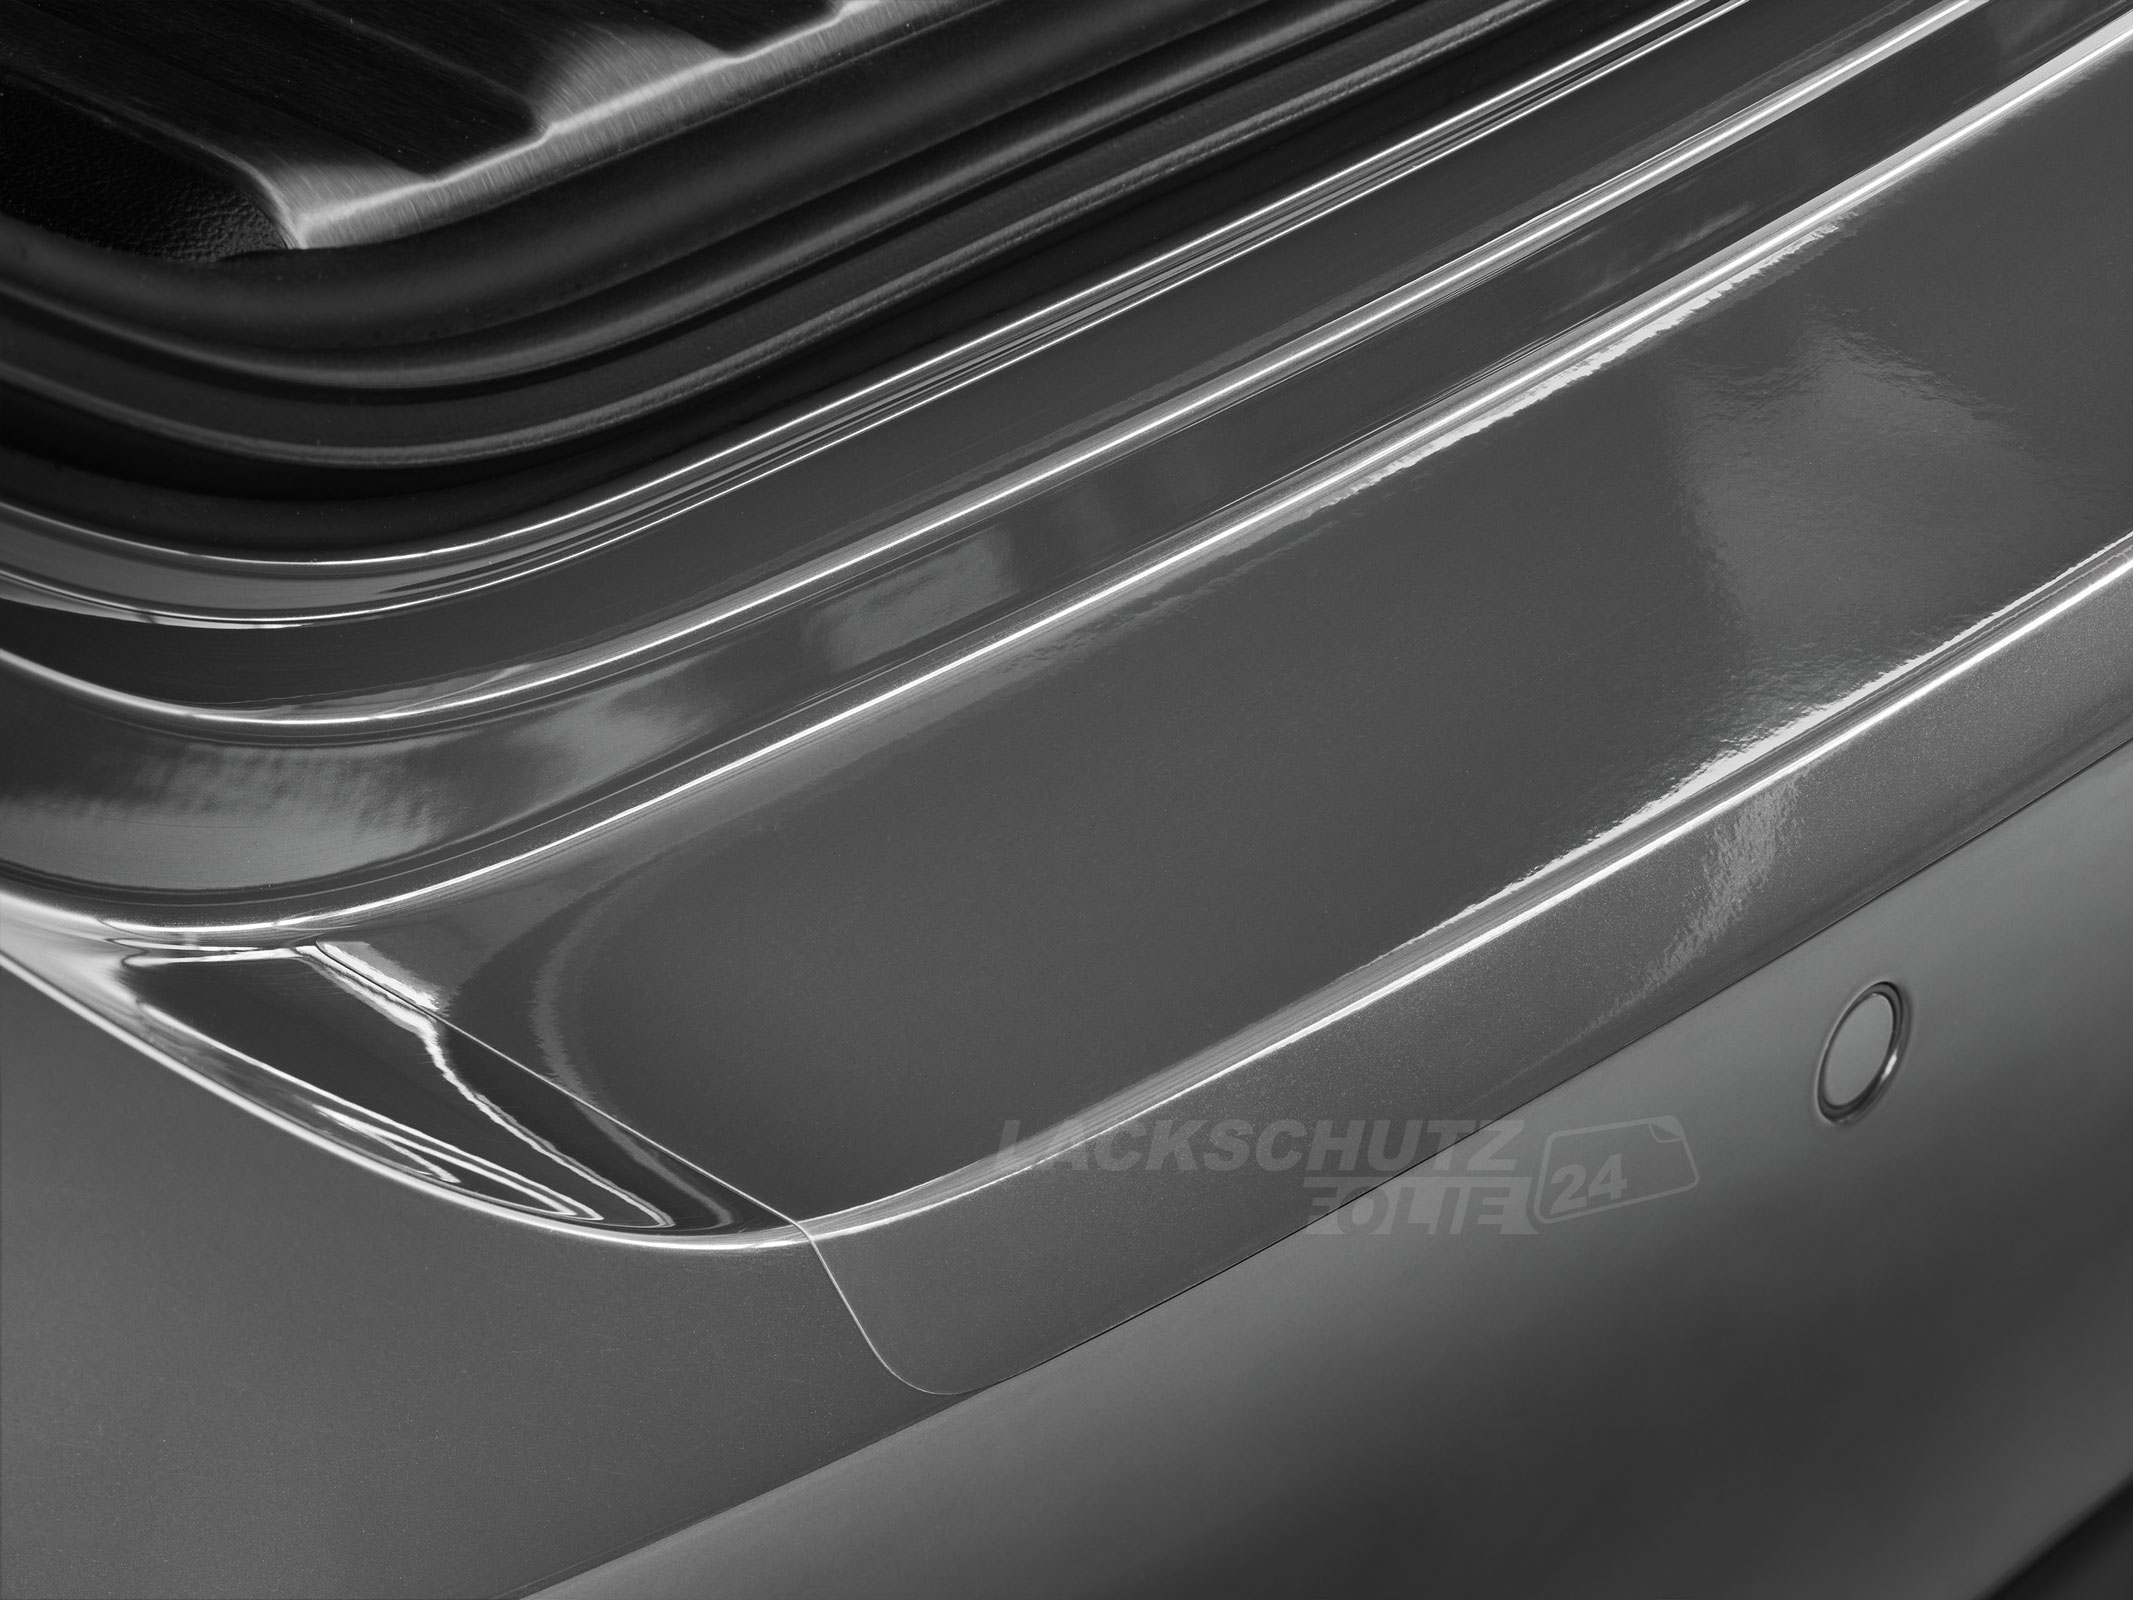 Ladekantenschutzfolie - Transparent Glatt Hochglänzend 240 µm stark für VW / Volkswagen T-Cross Typ C1, ab BJ 03/2019